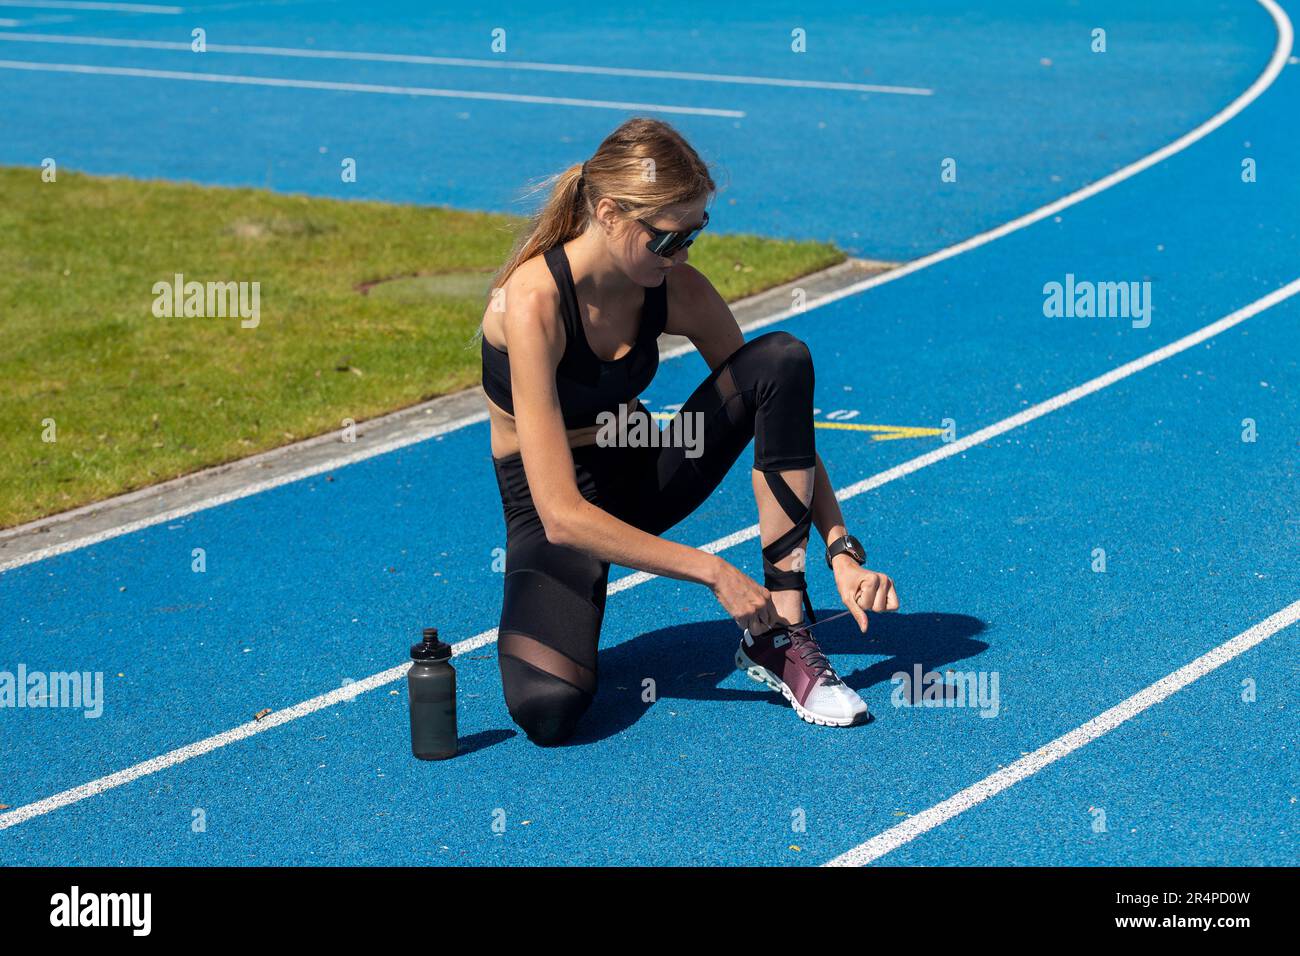 Giovane atleta femminile e atleta di campo su una pista blu tartan (immagine simbolo, modello rilasciato) Foto Stock